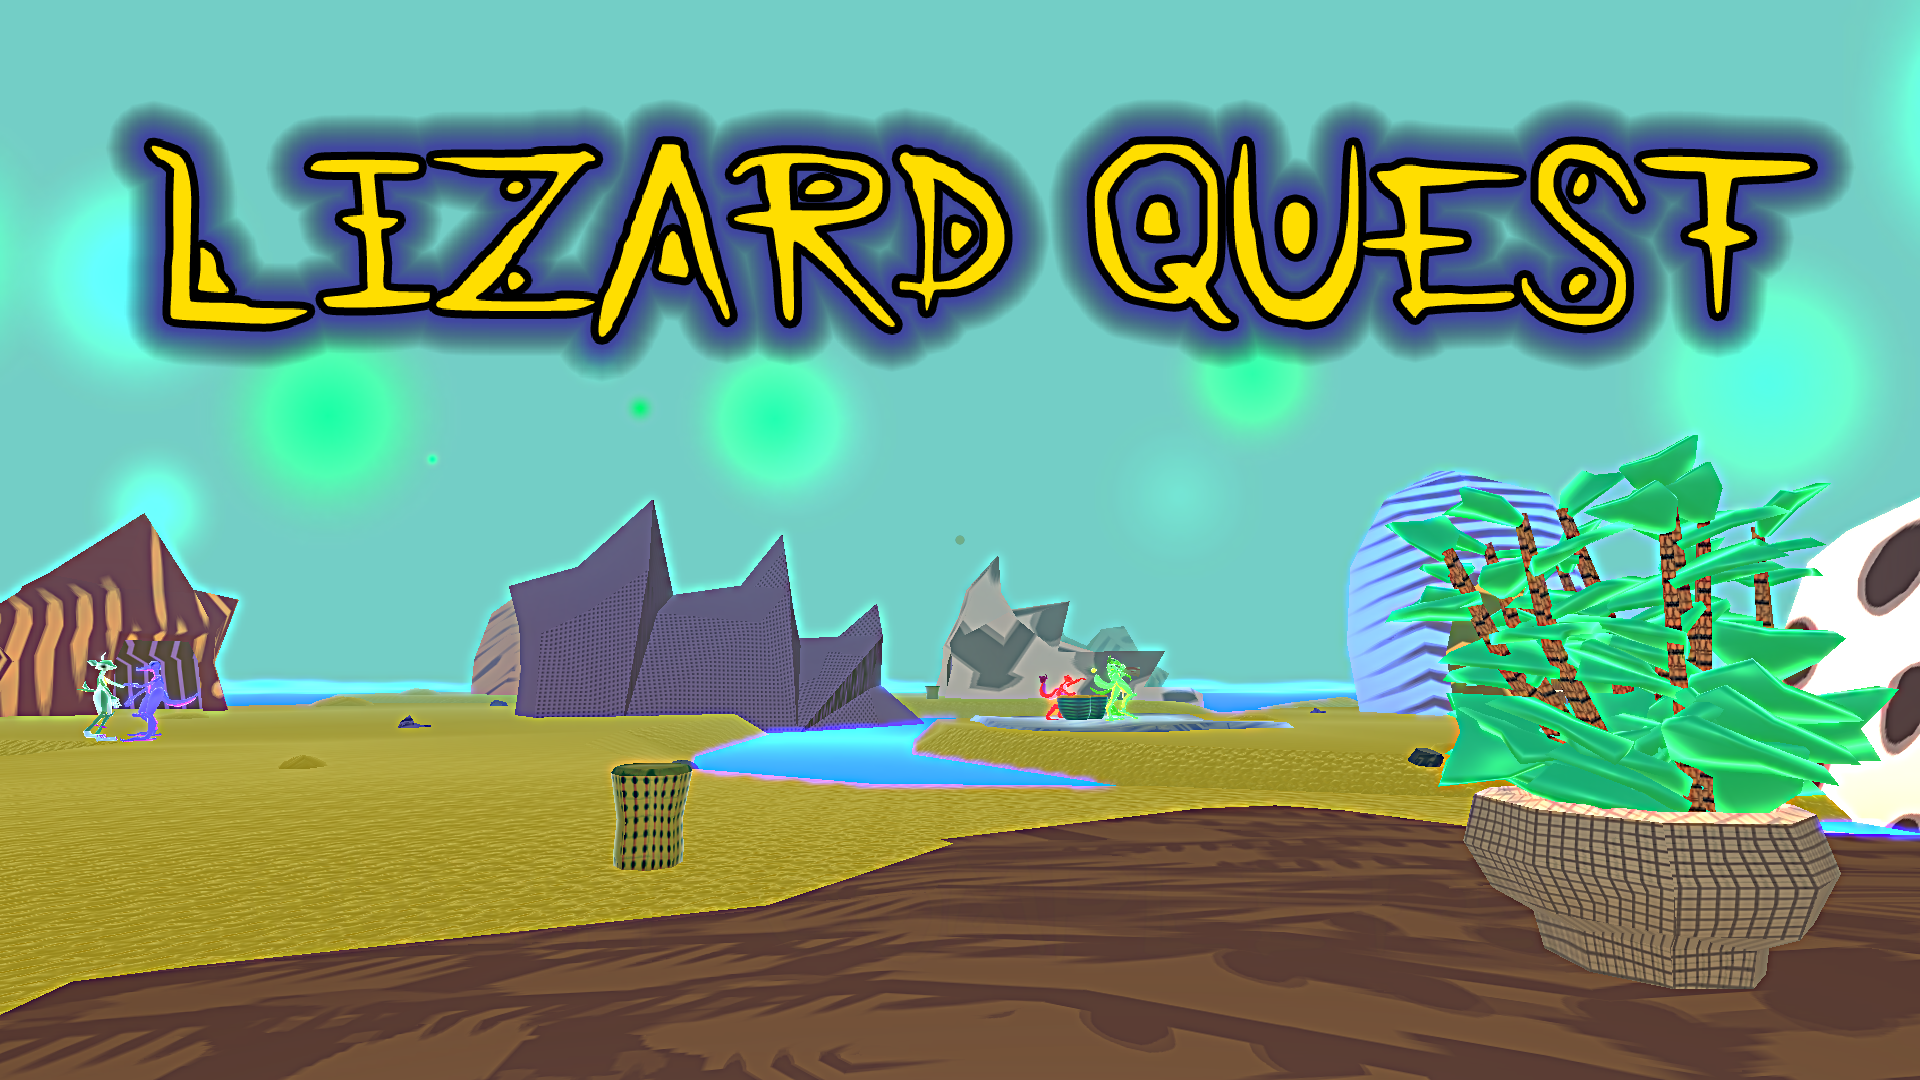 Lizard Quest